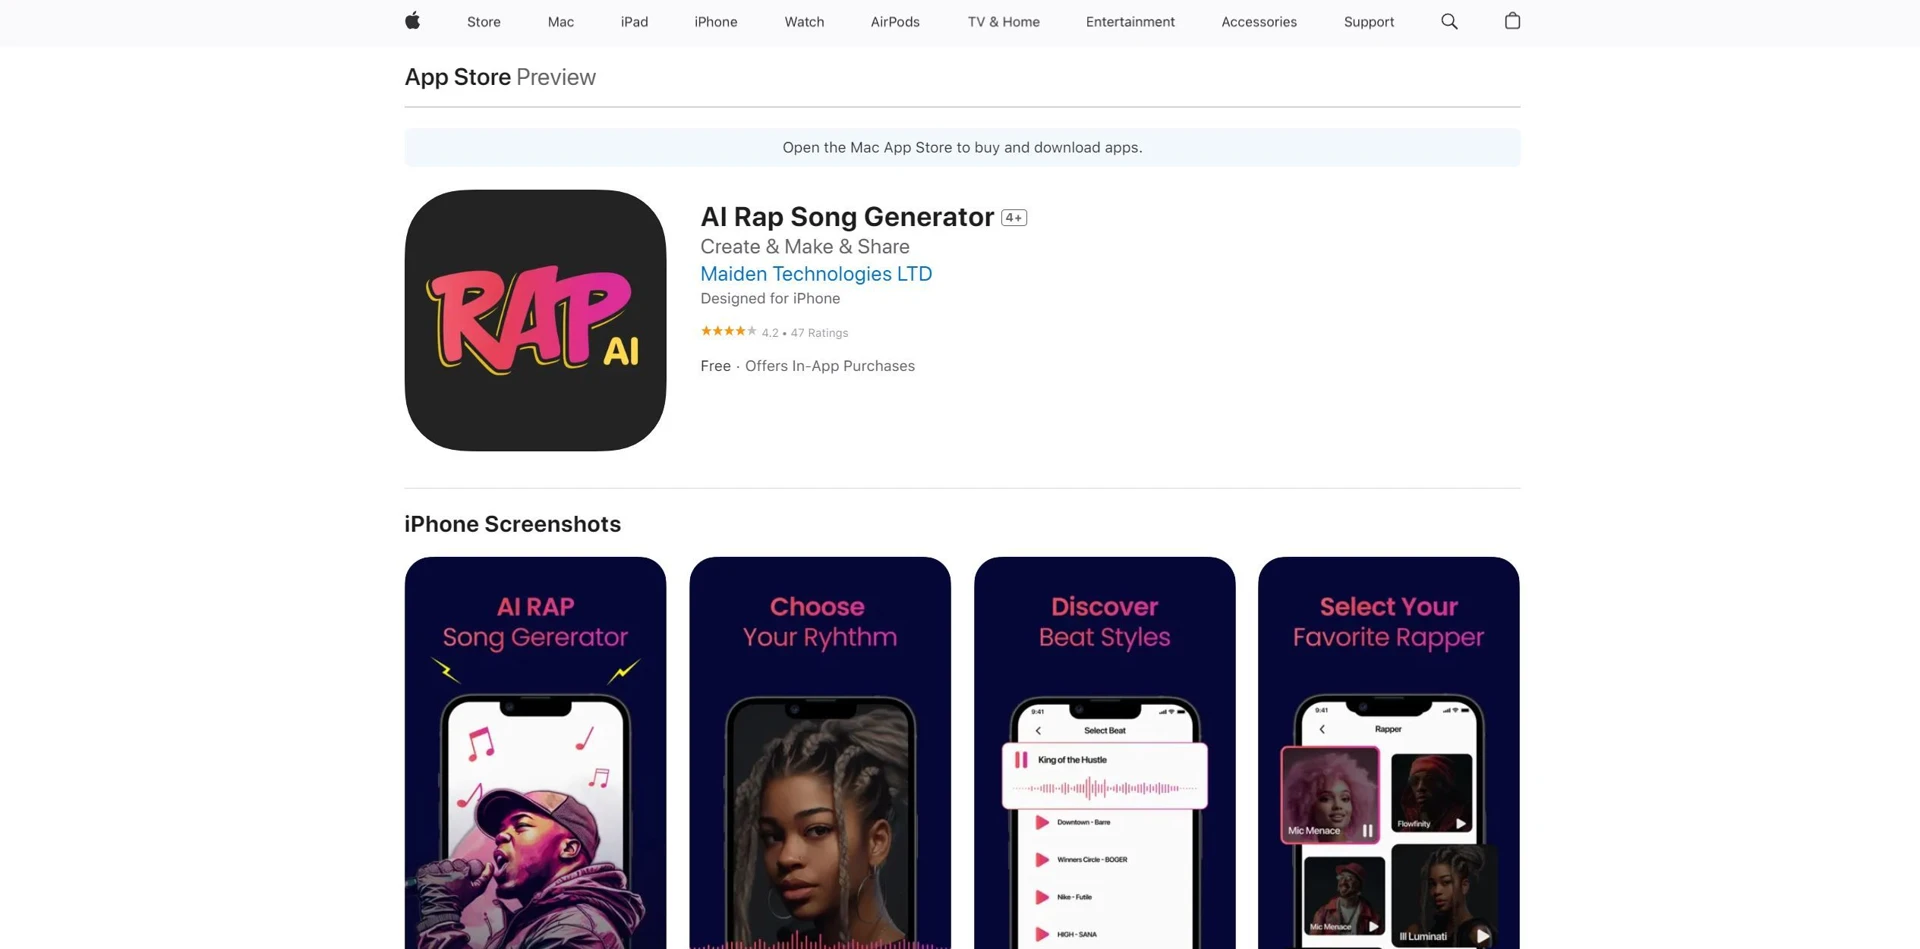 AI Rap Song Generatorwebsite picture